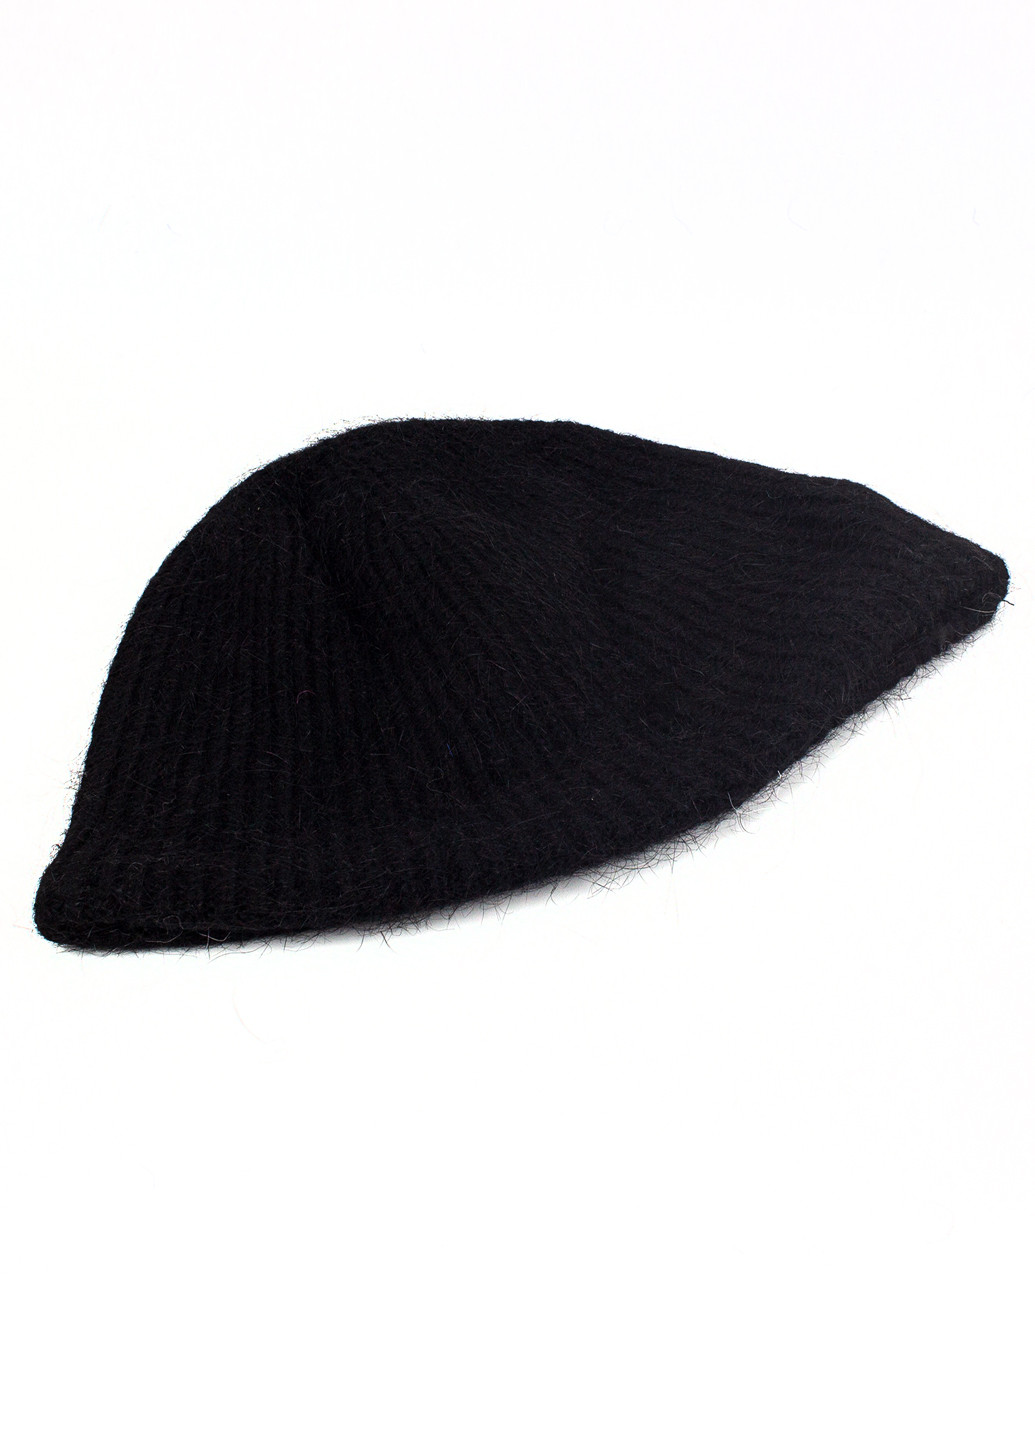 Вязаная шапка-панама из шерсти кролика черная Corze hc5004 (269342899)